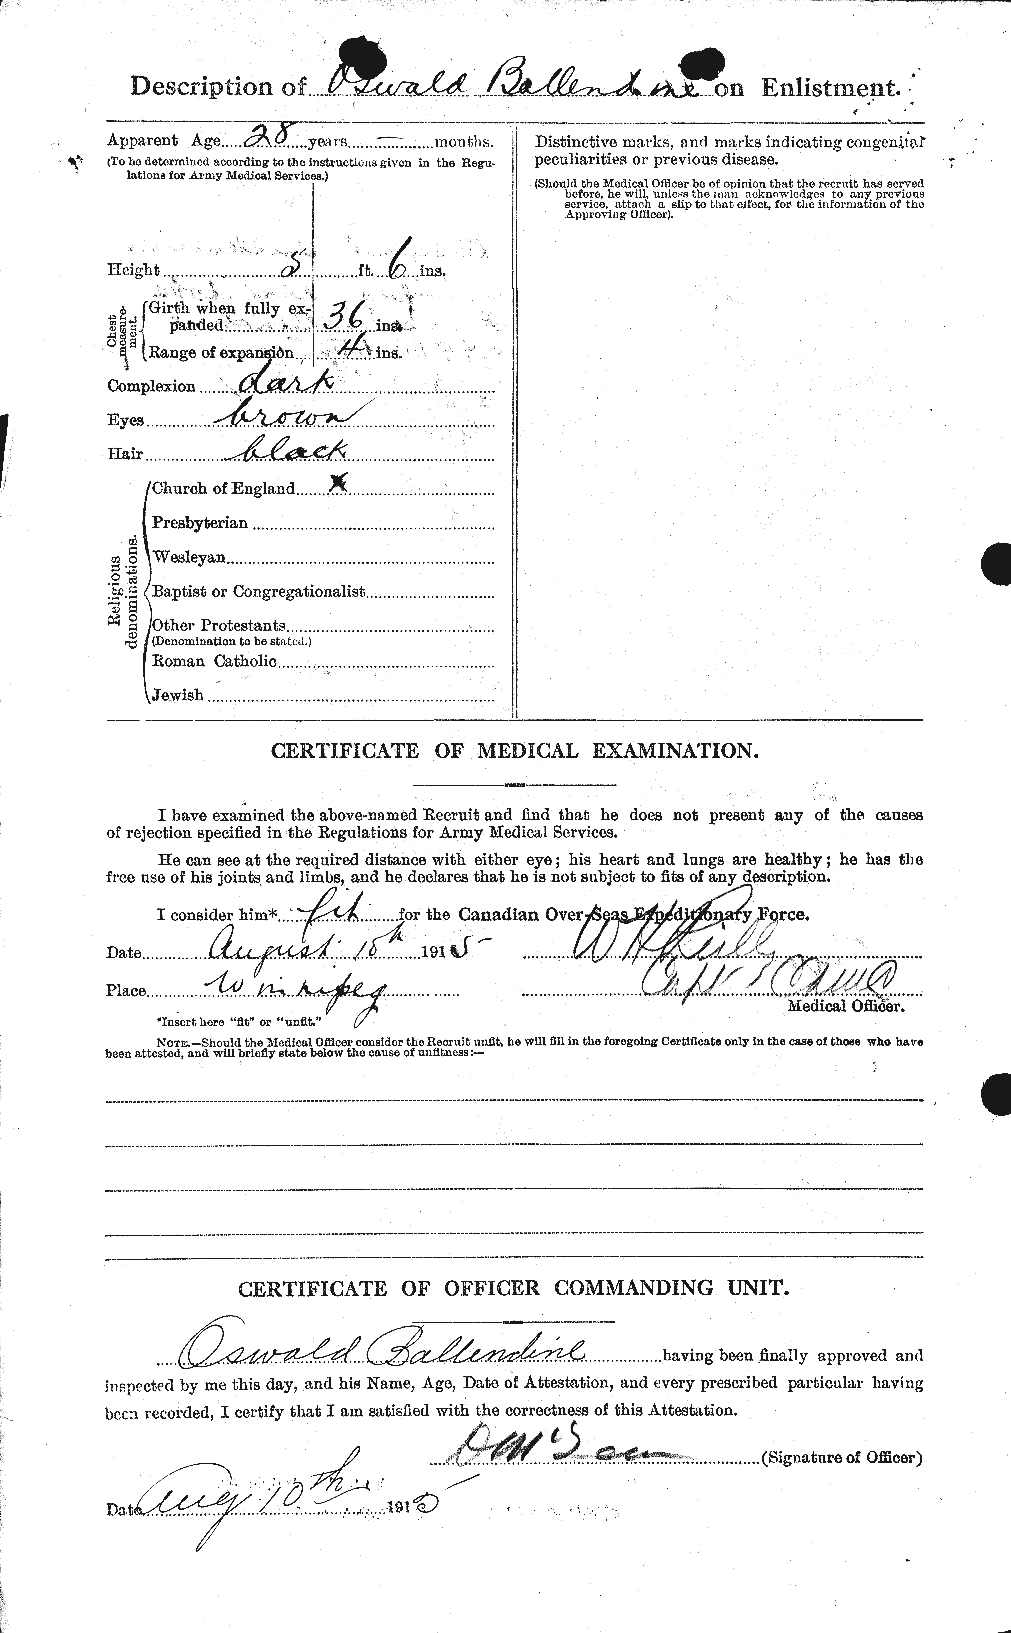 Dossiers du Personnel de la Première Guerre mondiale - CEC 219681b